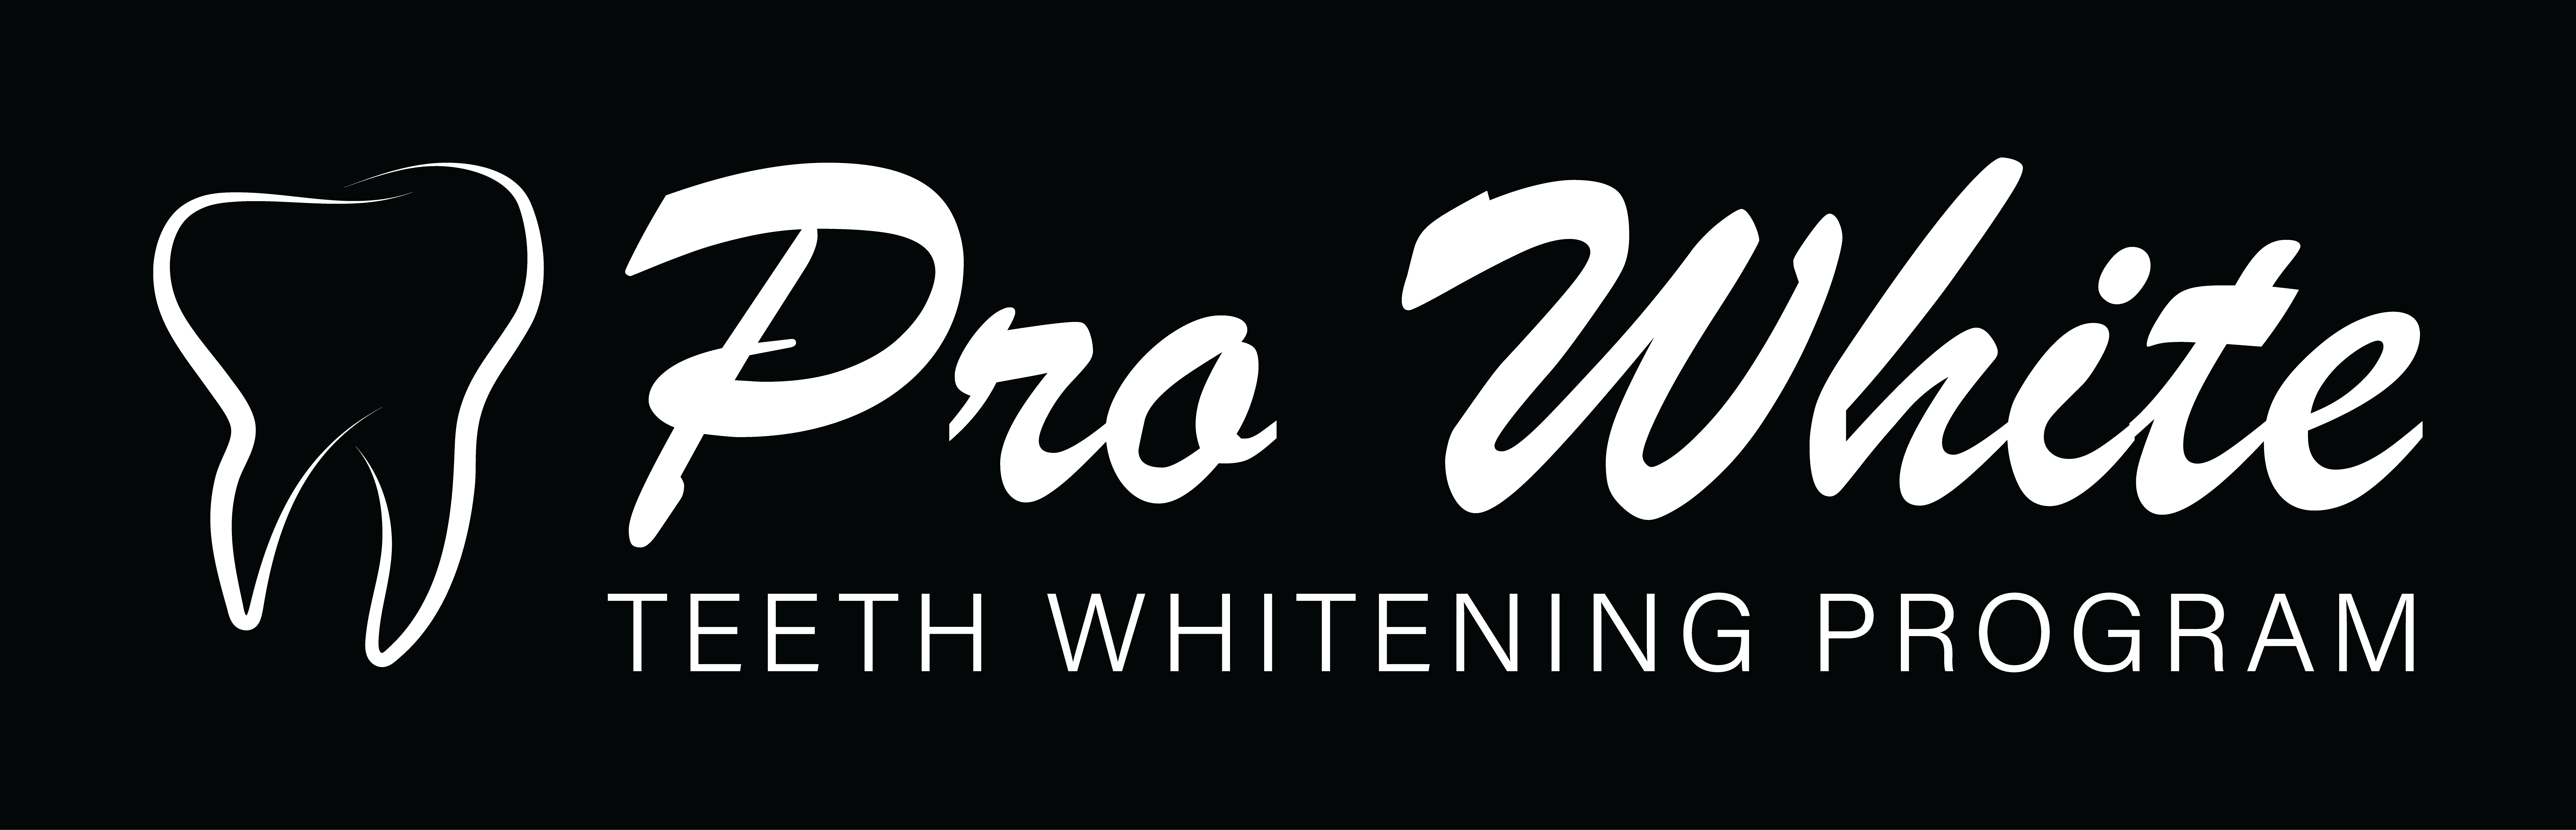 Pro-White-logo